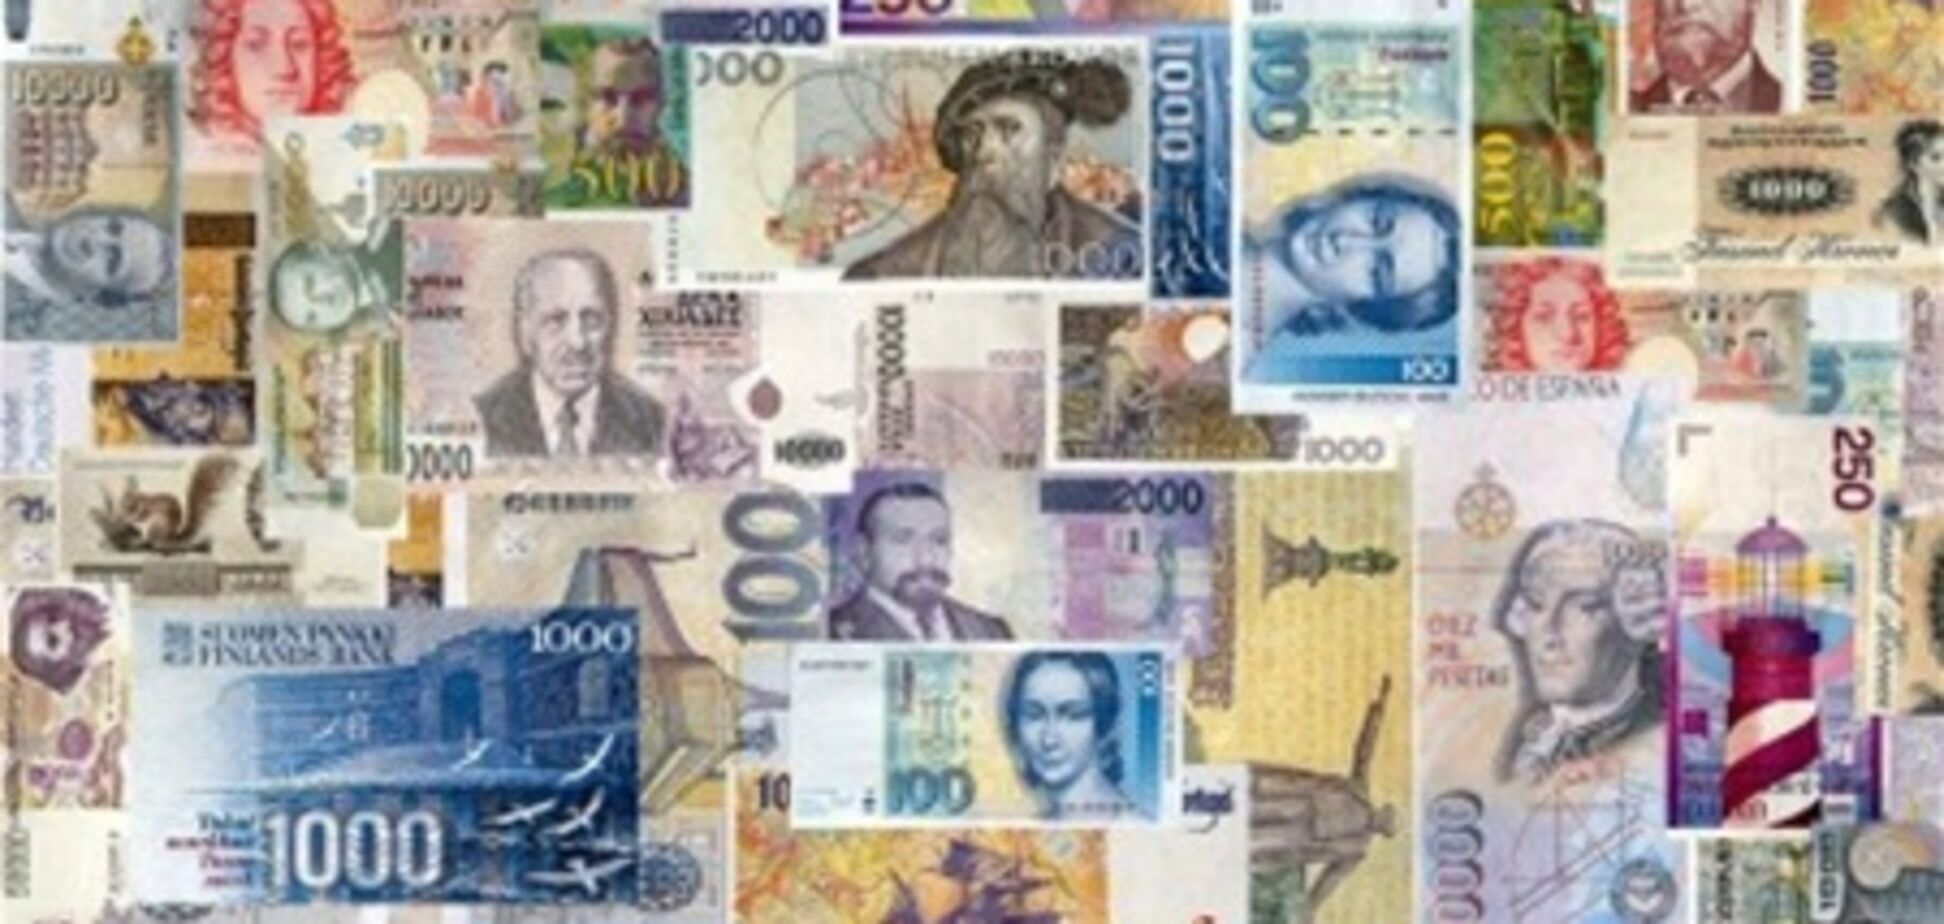 Количество валютообменных операций в стране уменьшается